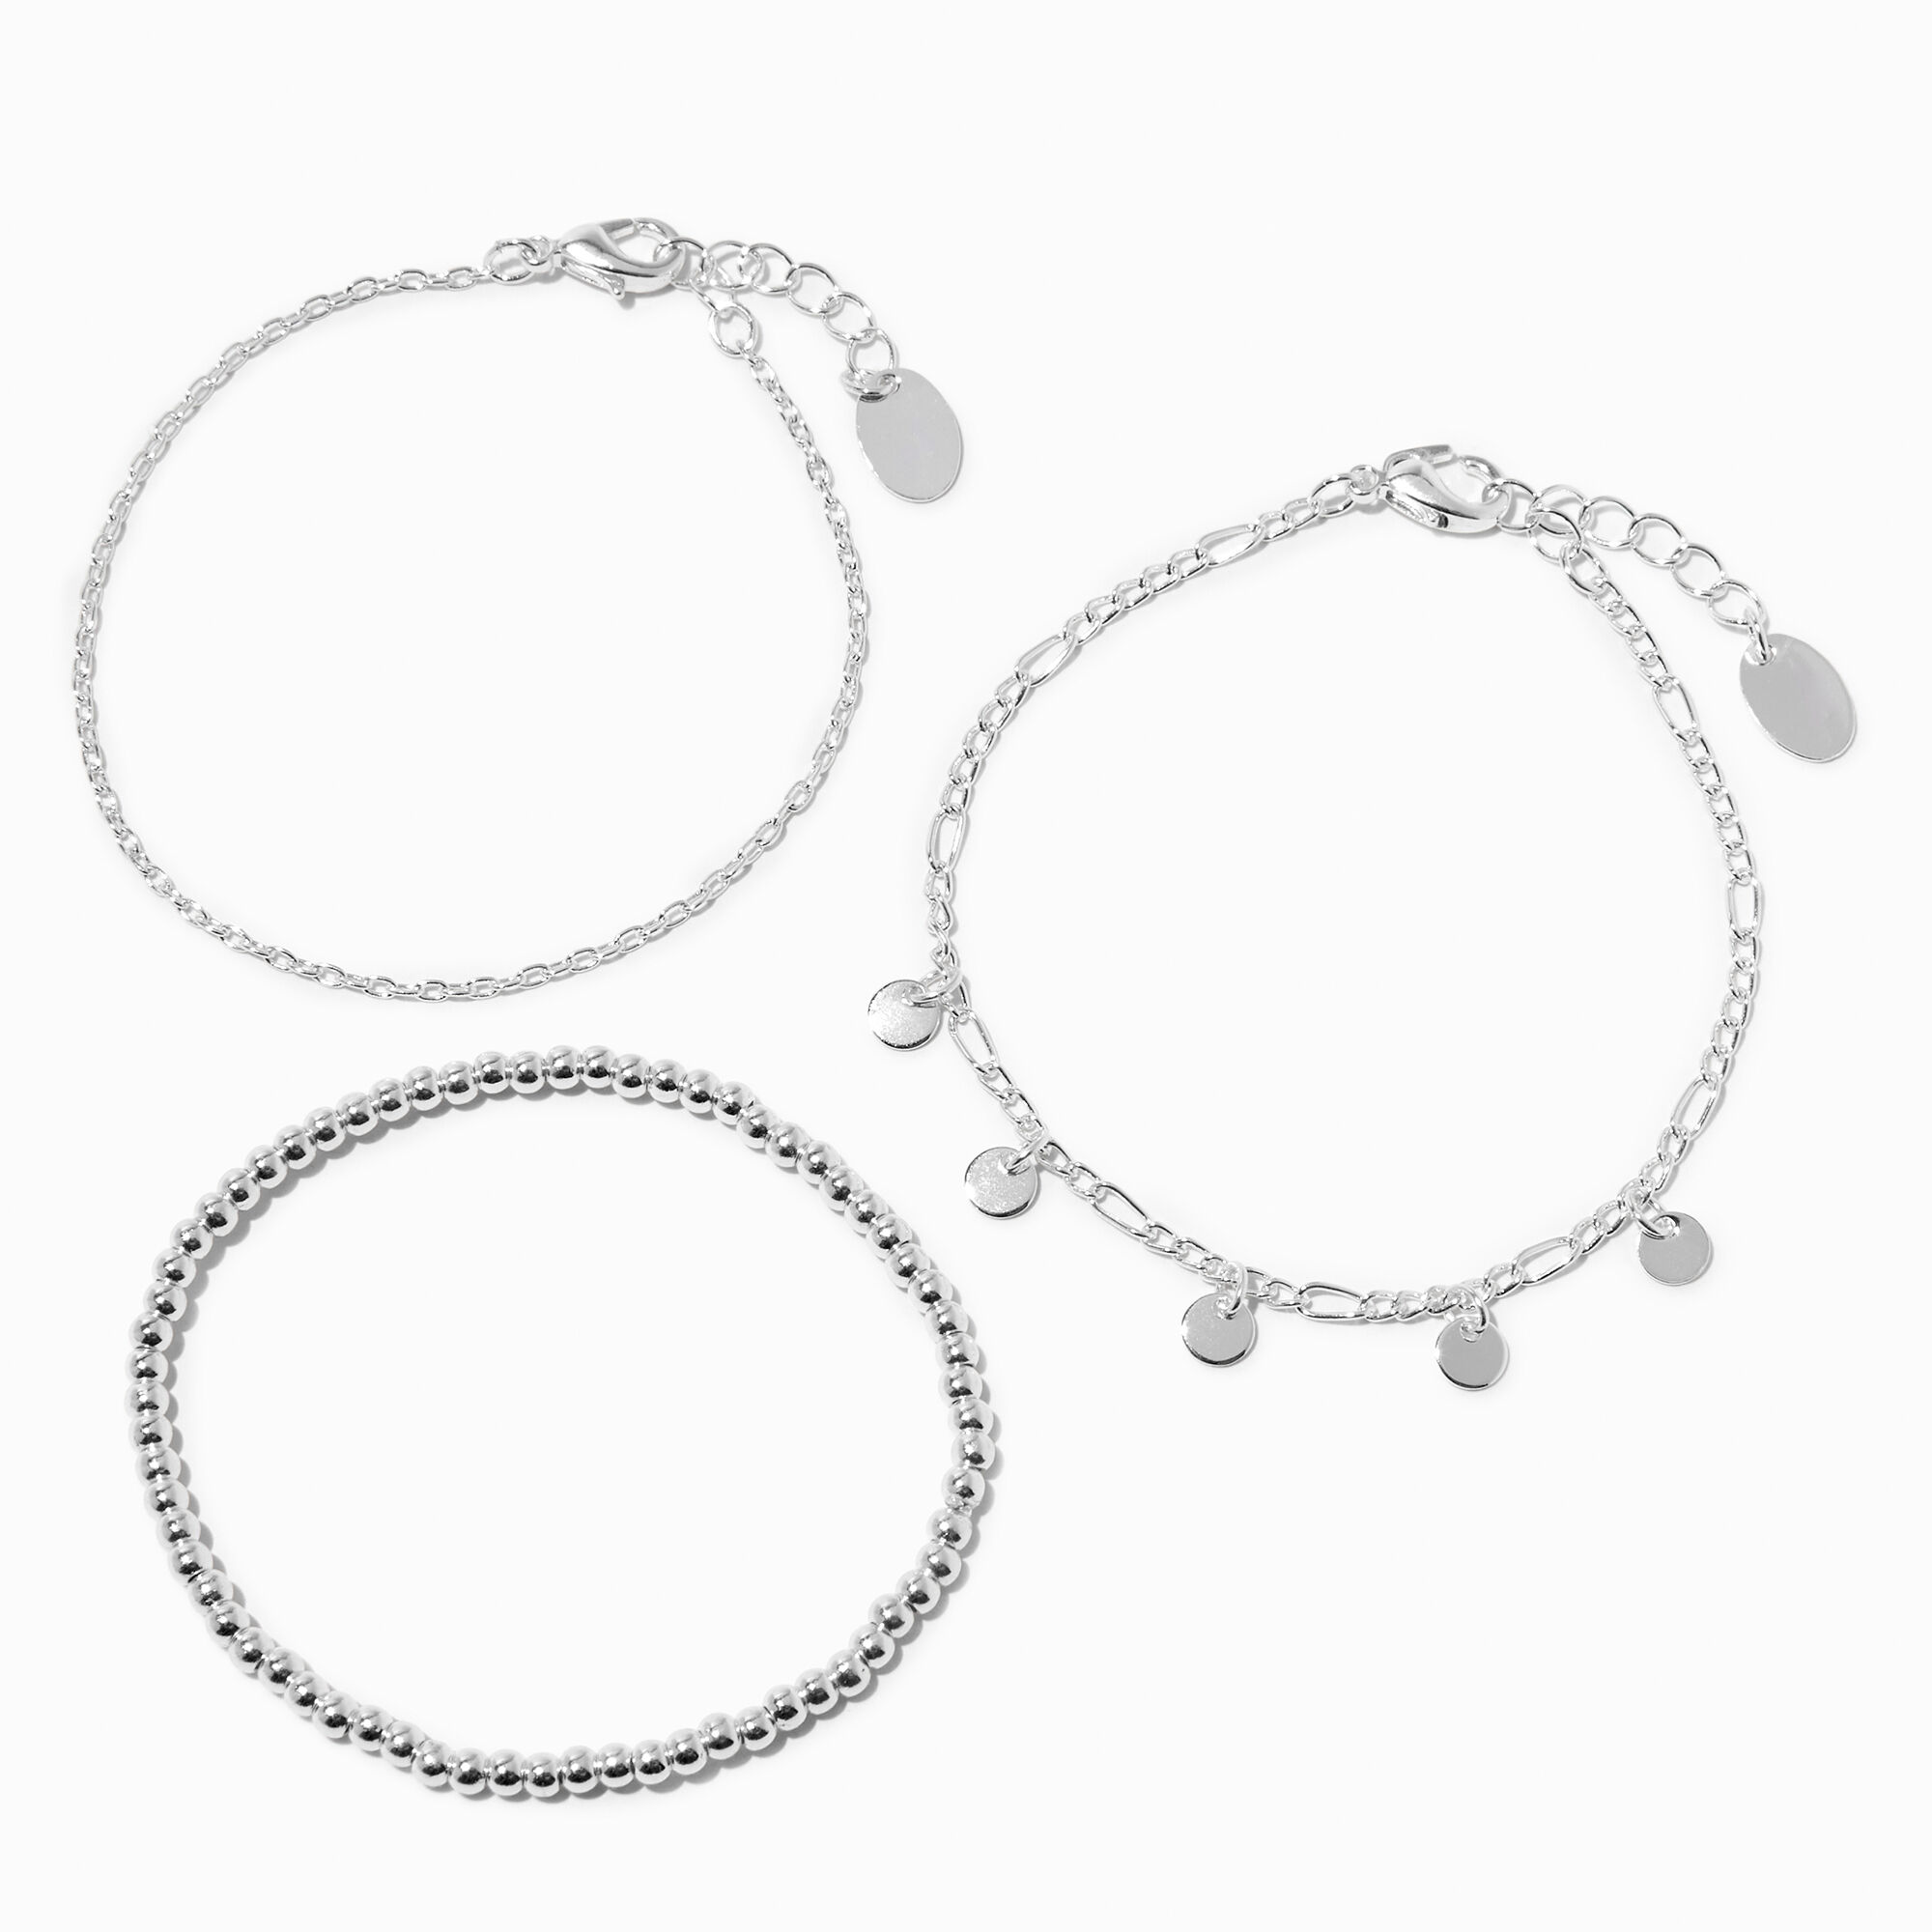 Silver Color Alloy Metal Charms for Bracelets 21 pcs per set